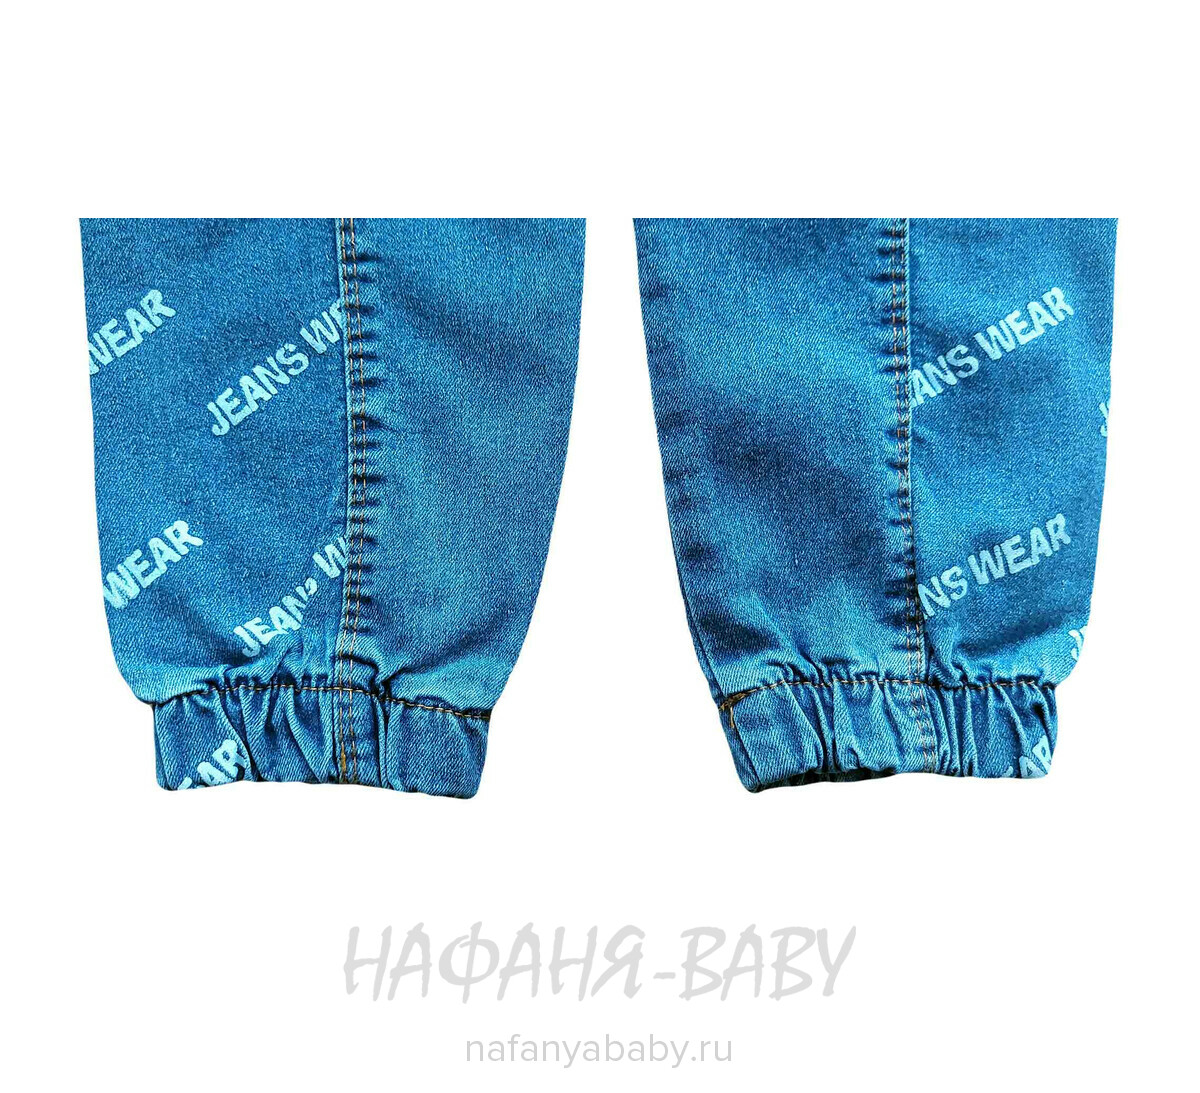 Детские джинсы YAVRUCAK арт: 4251 для мальчика от 3 до 7 лет, цвет синий, оптом Турция